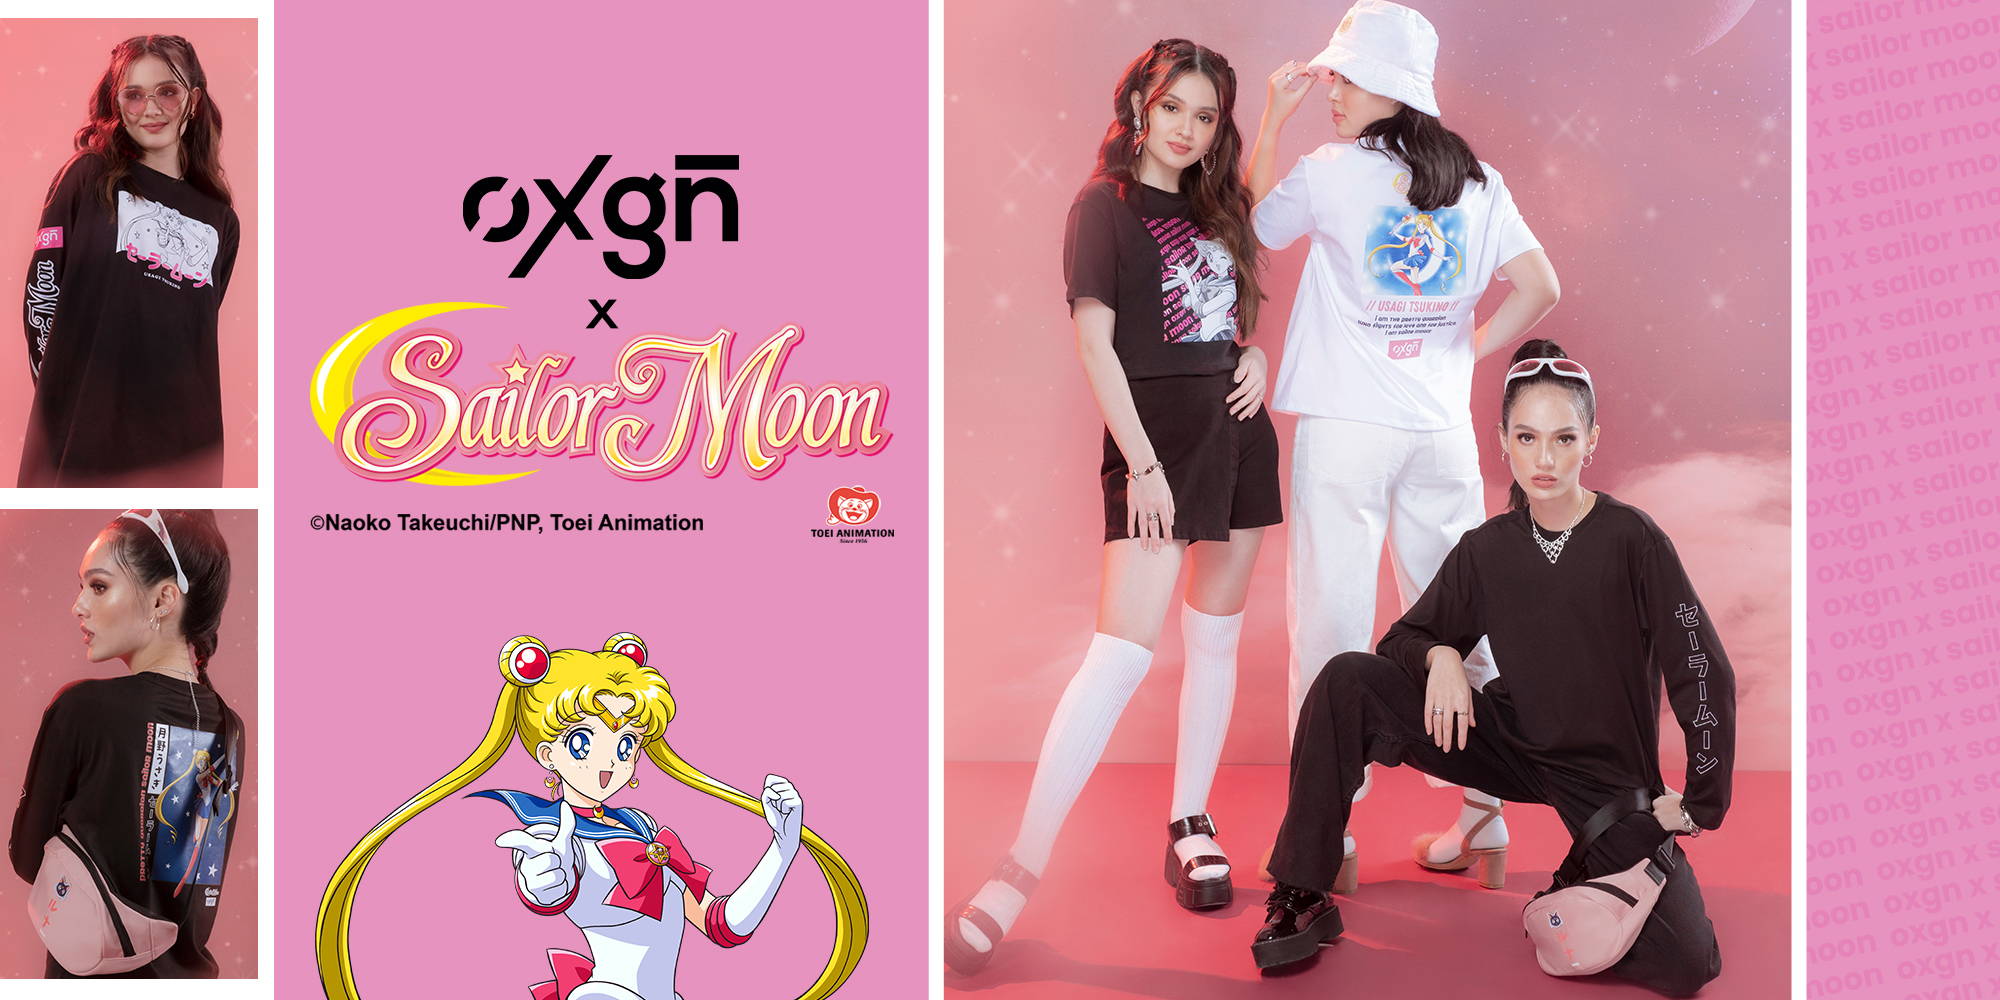 A Sailor Moon x O&B collaboration has just landed in Bangkok